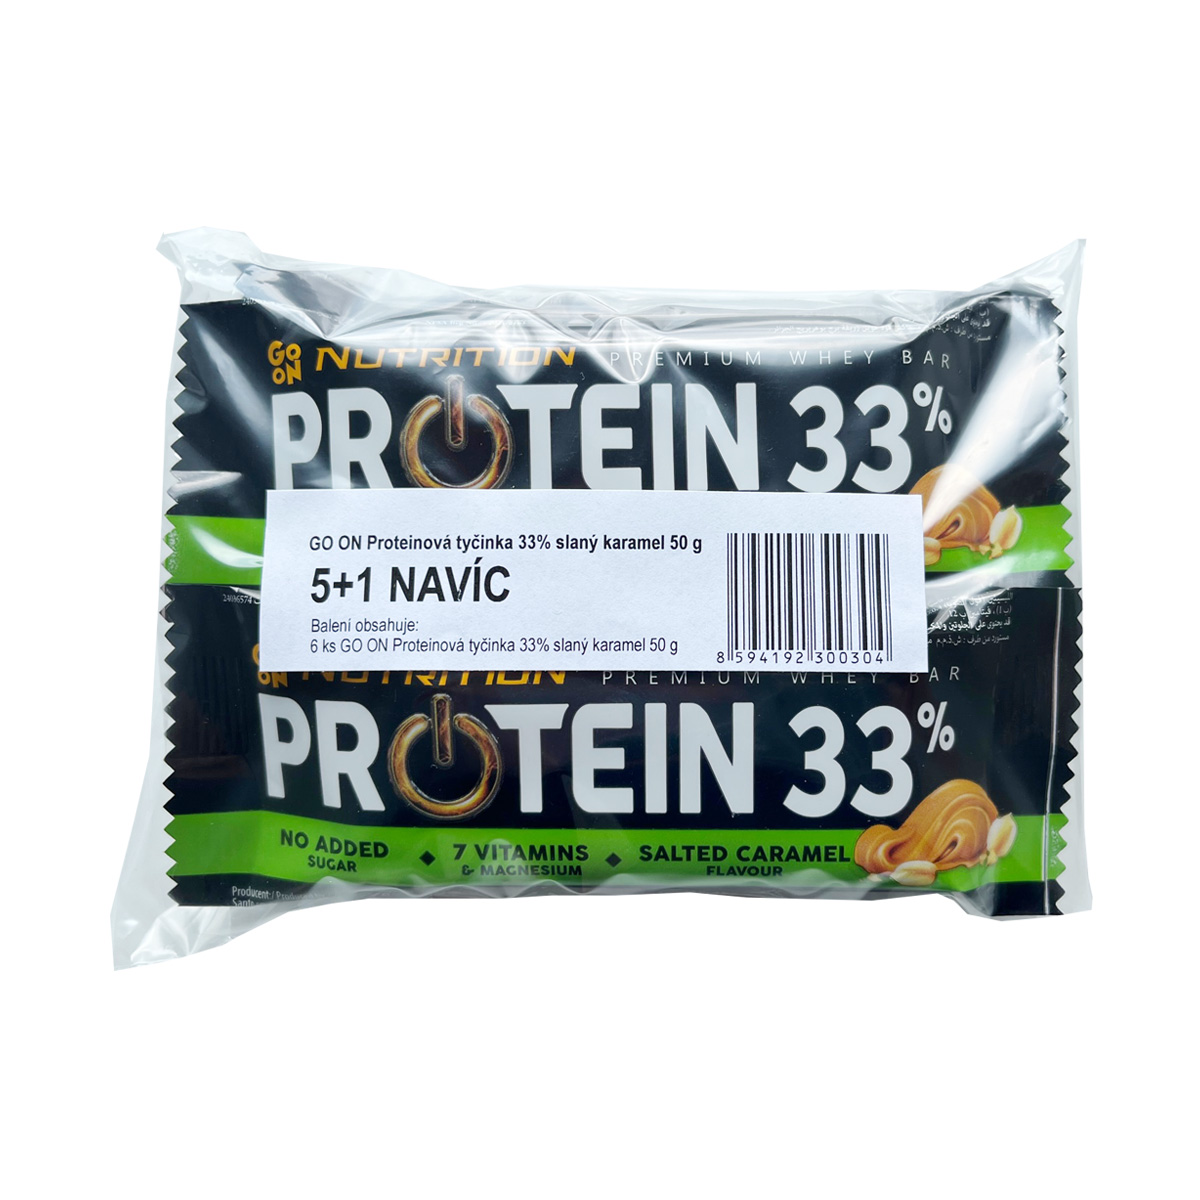 Zobrazit detail výrobku Vieste Proteinová tyčinka Go on 33% slaný karamel 50 g 5+1 navíc